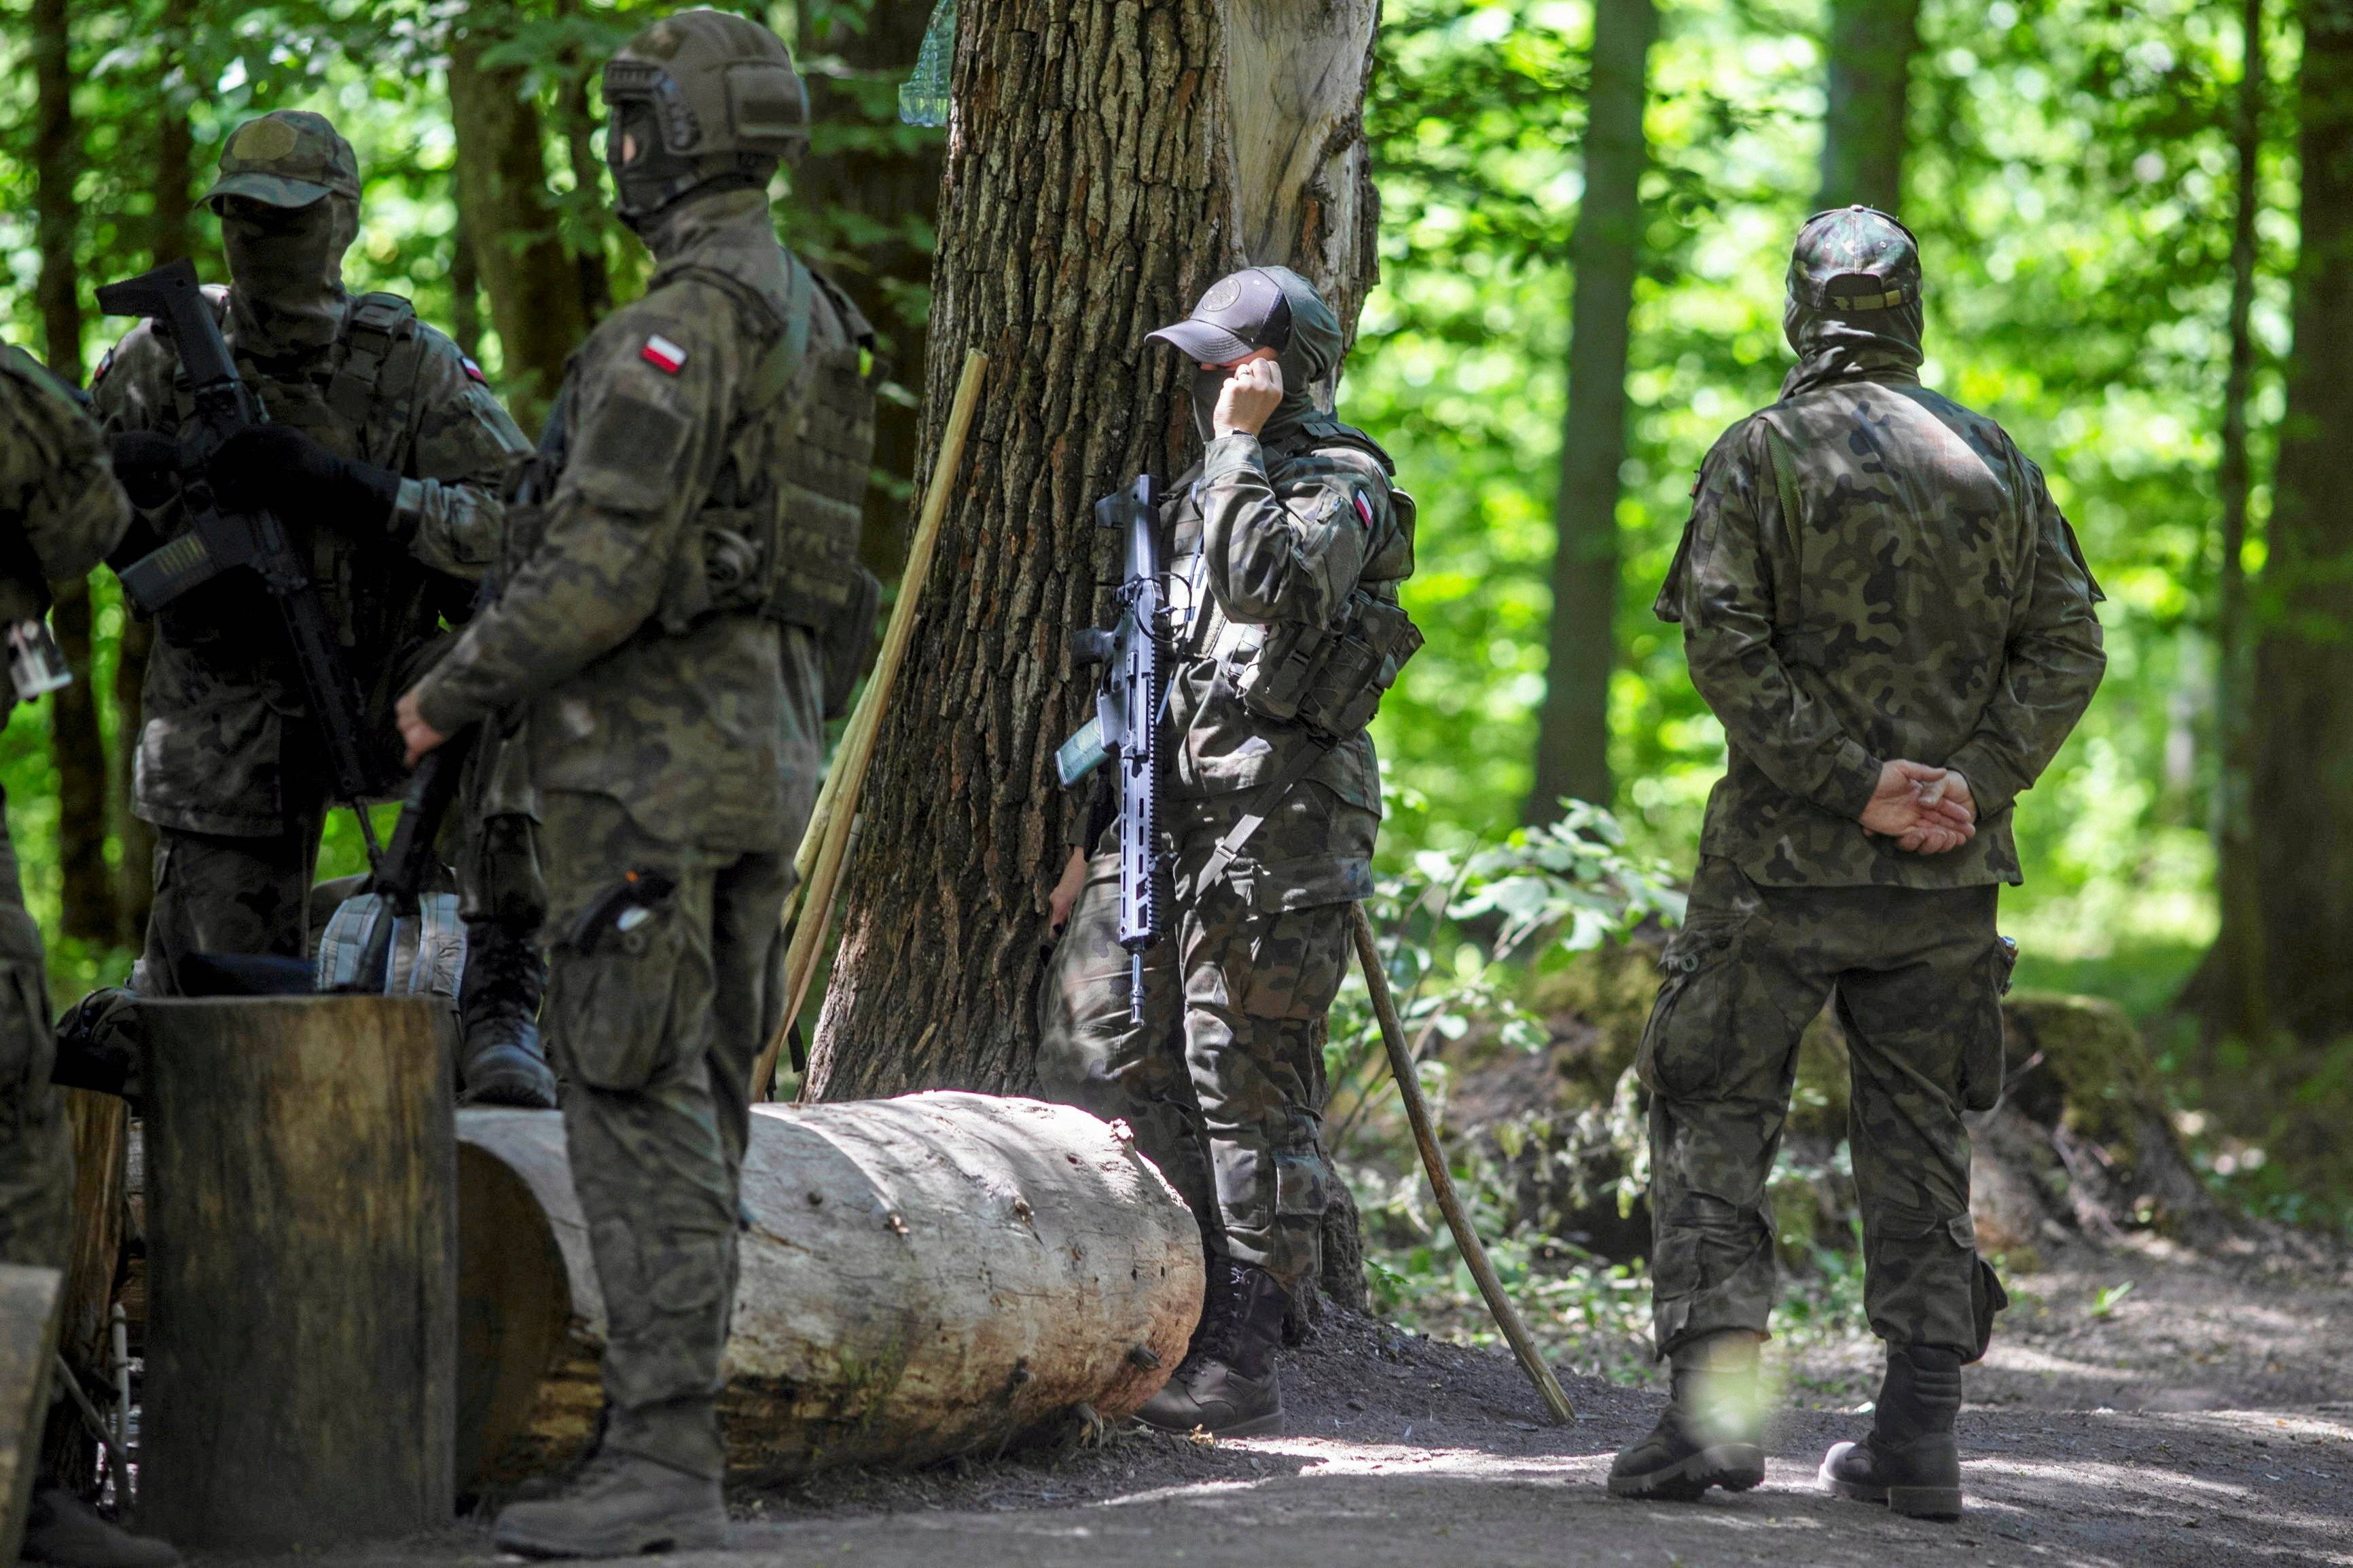 Kilka osób w mundurach z bronią w lesie